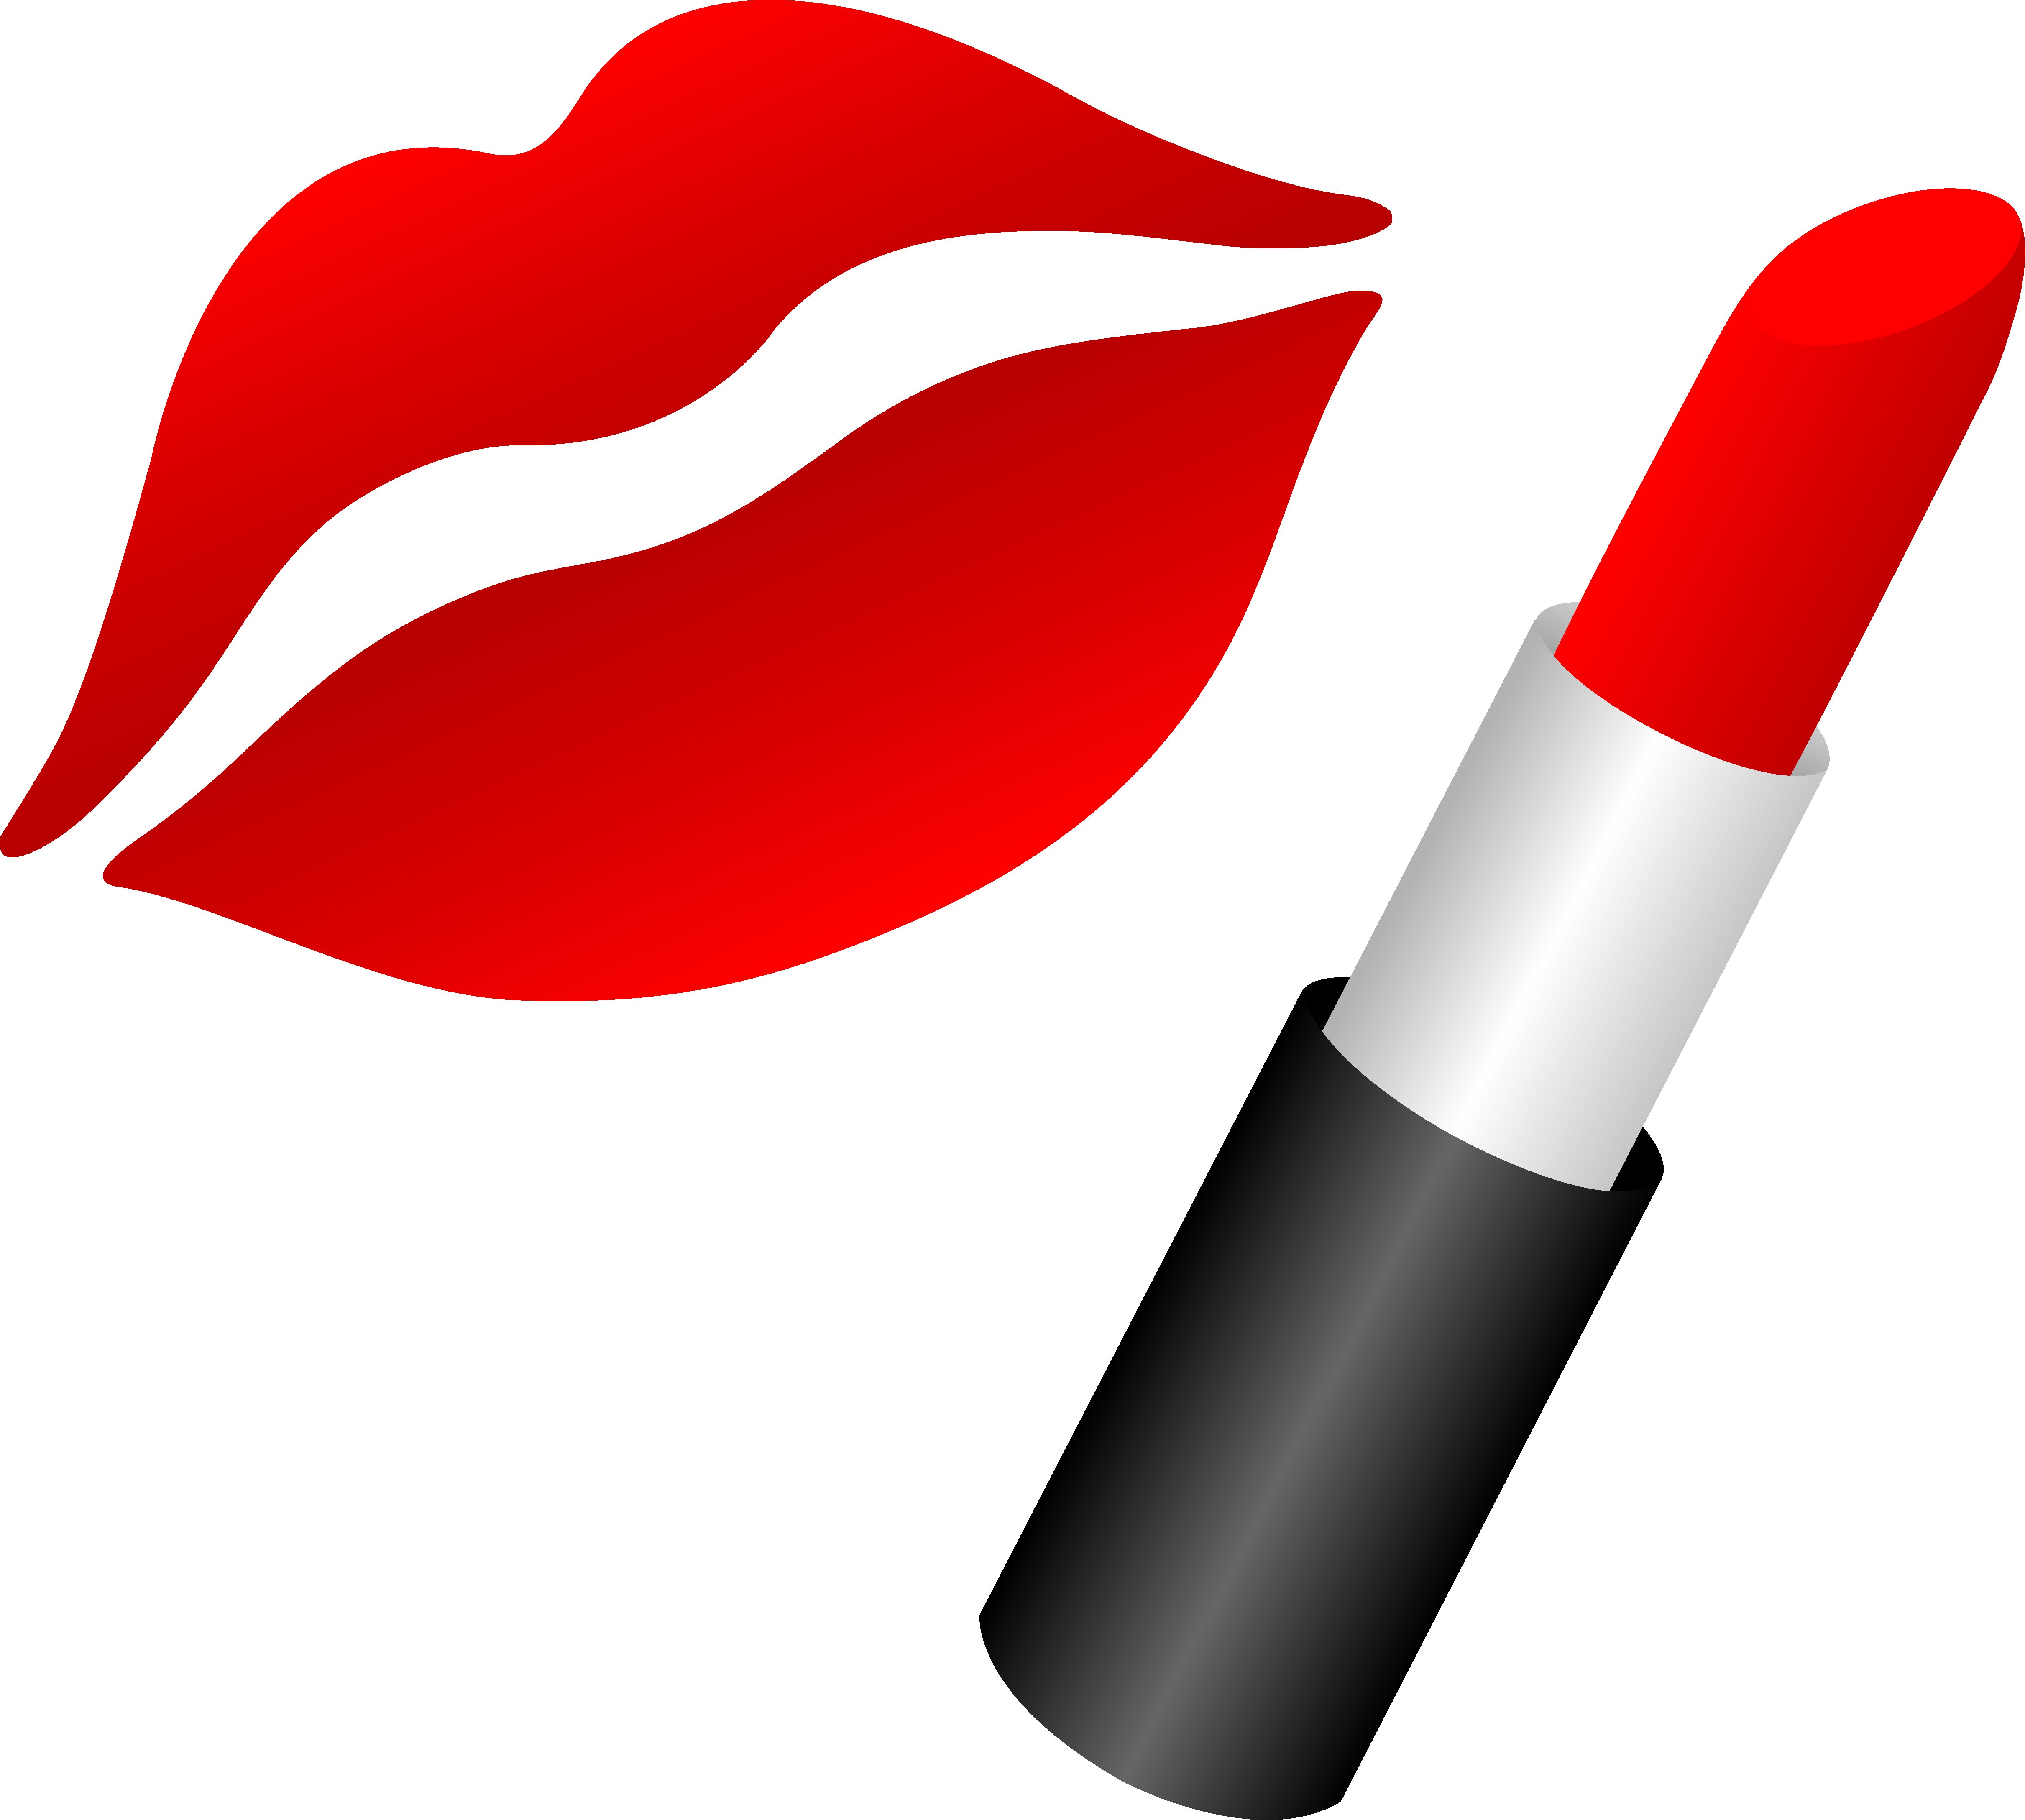 Lipstick and Lips Clip Art